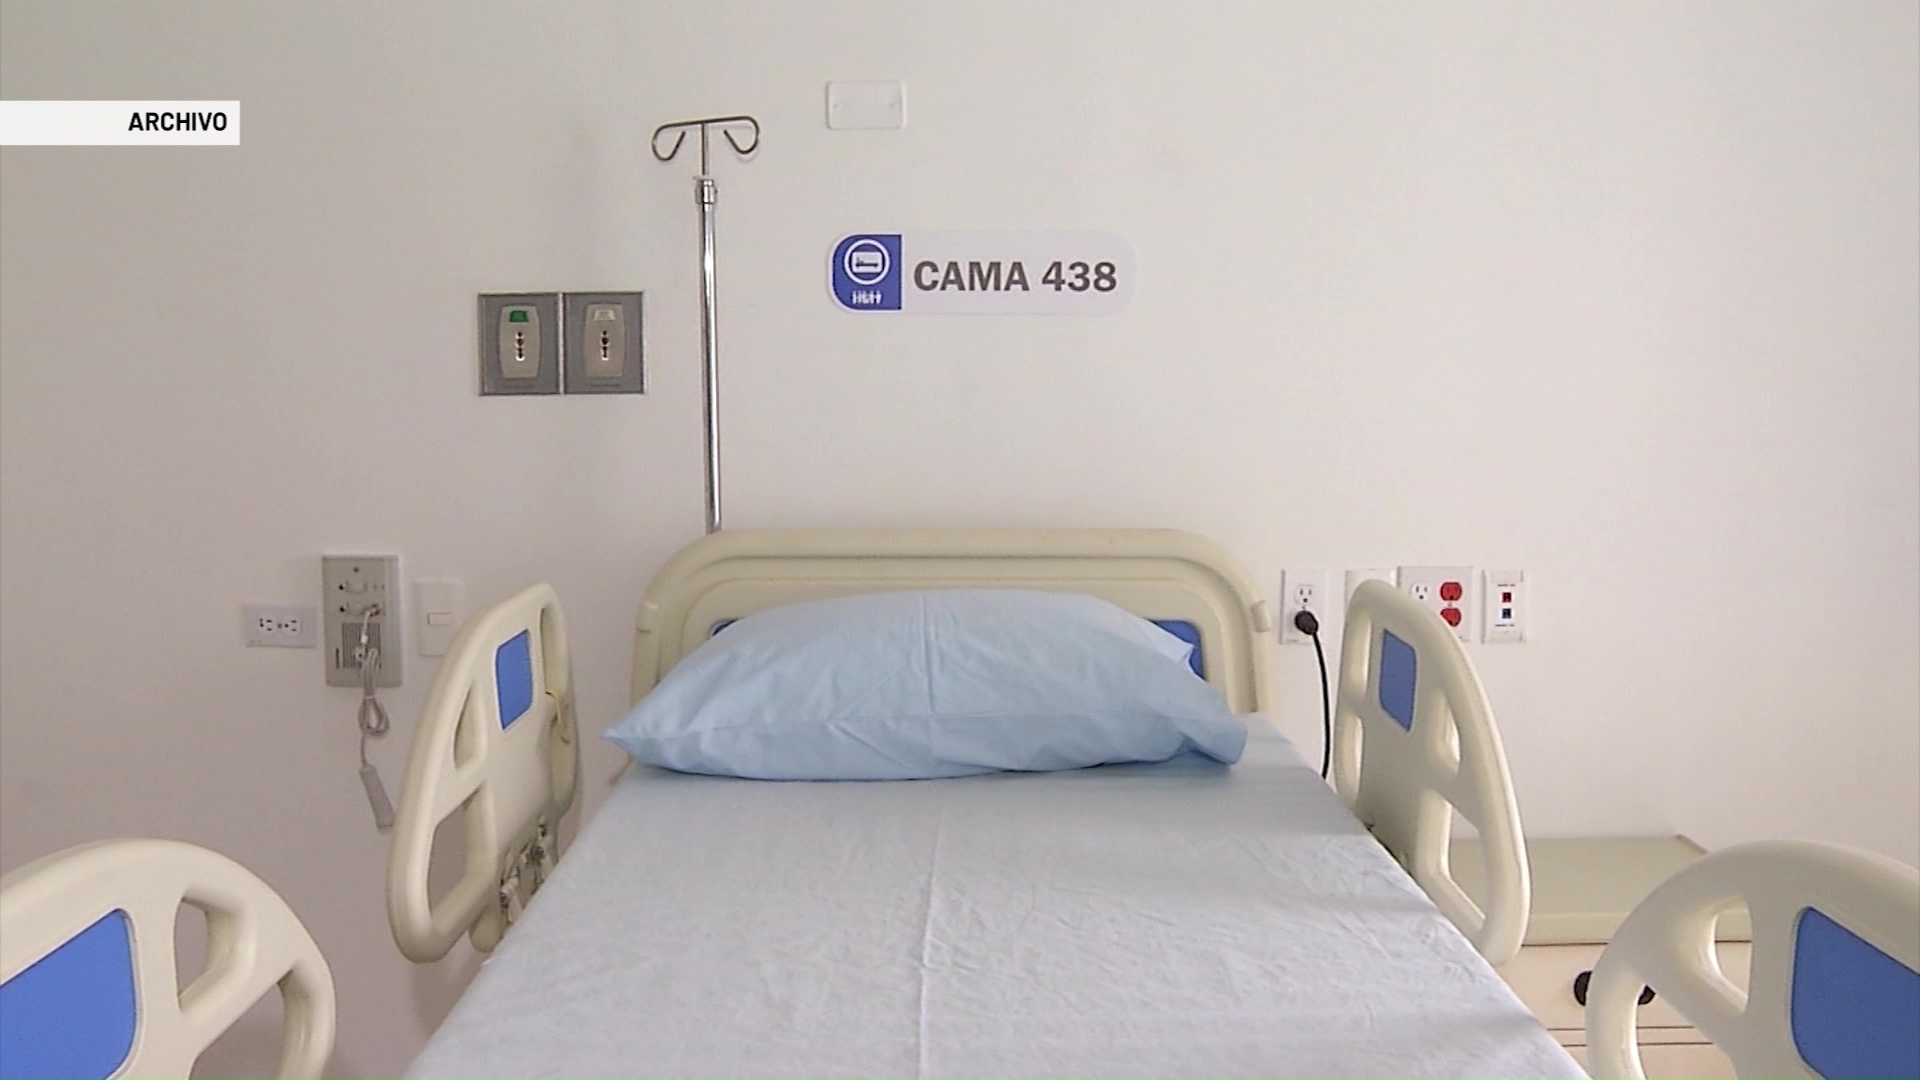 Solo quedan 20 camas UCI en Medellín